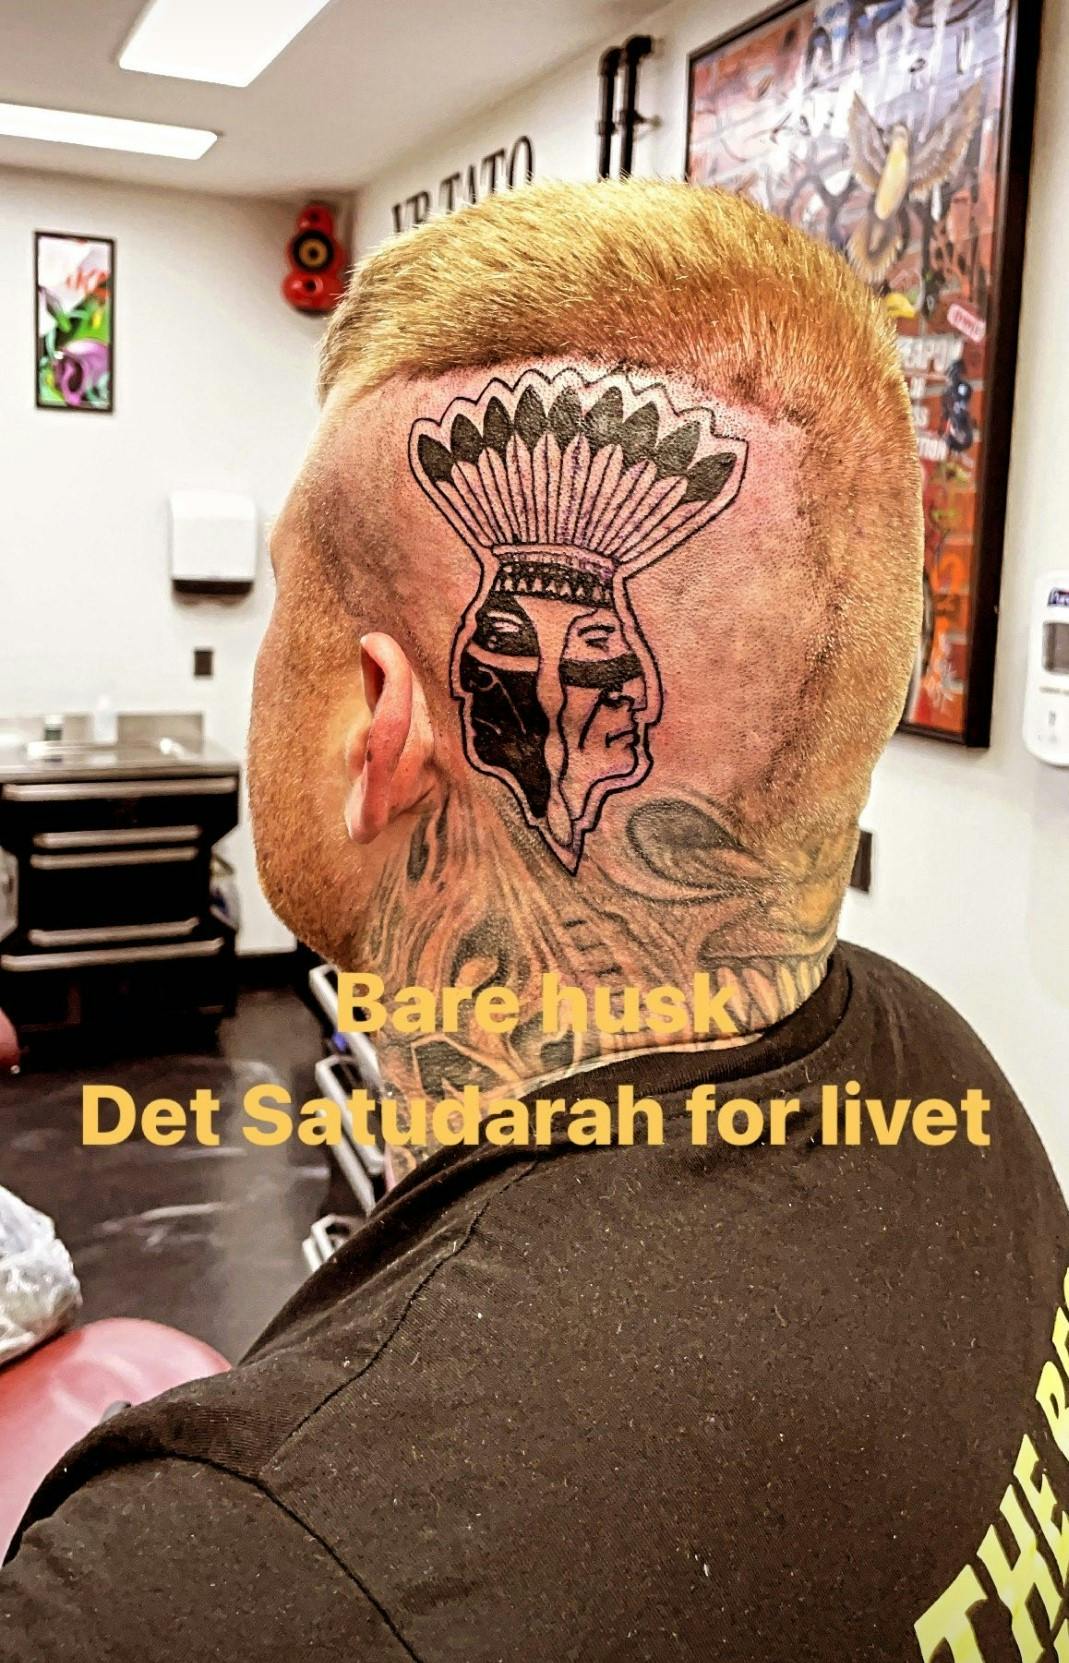 Patrick Nielsen med sin Satudarah tatovering på siden af hovedet. Logoet forestiller to indianere, der er sort og hvid i huden. Satudarah er kendt for at være en rockerklub med mange etniciteter og for at have medlemmer, der er dømt for alvorlig kriminalitet.
